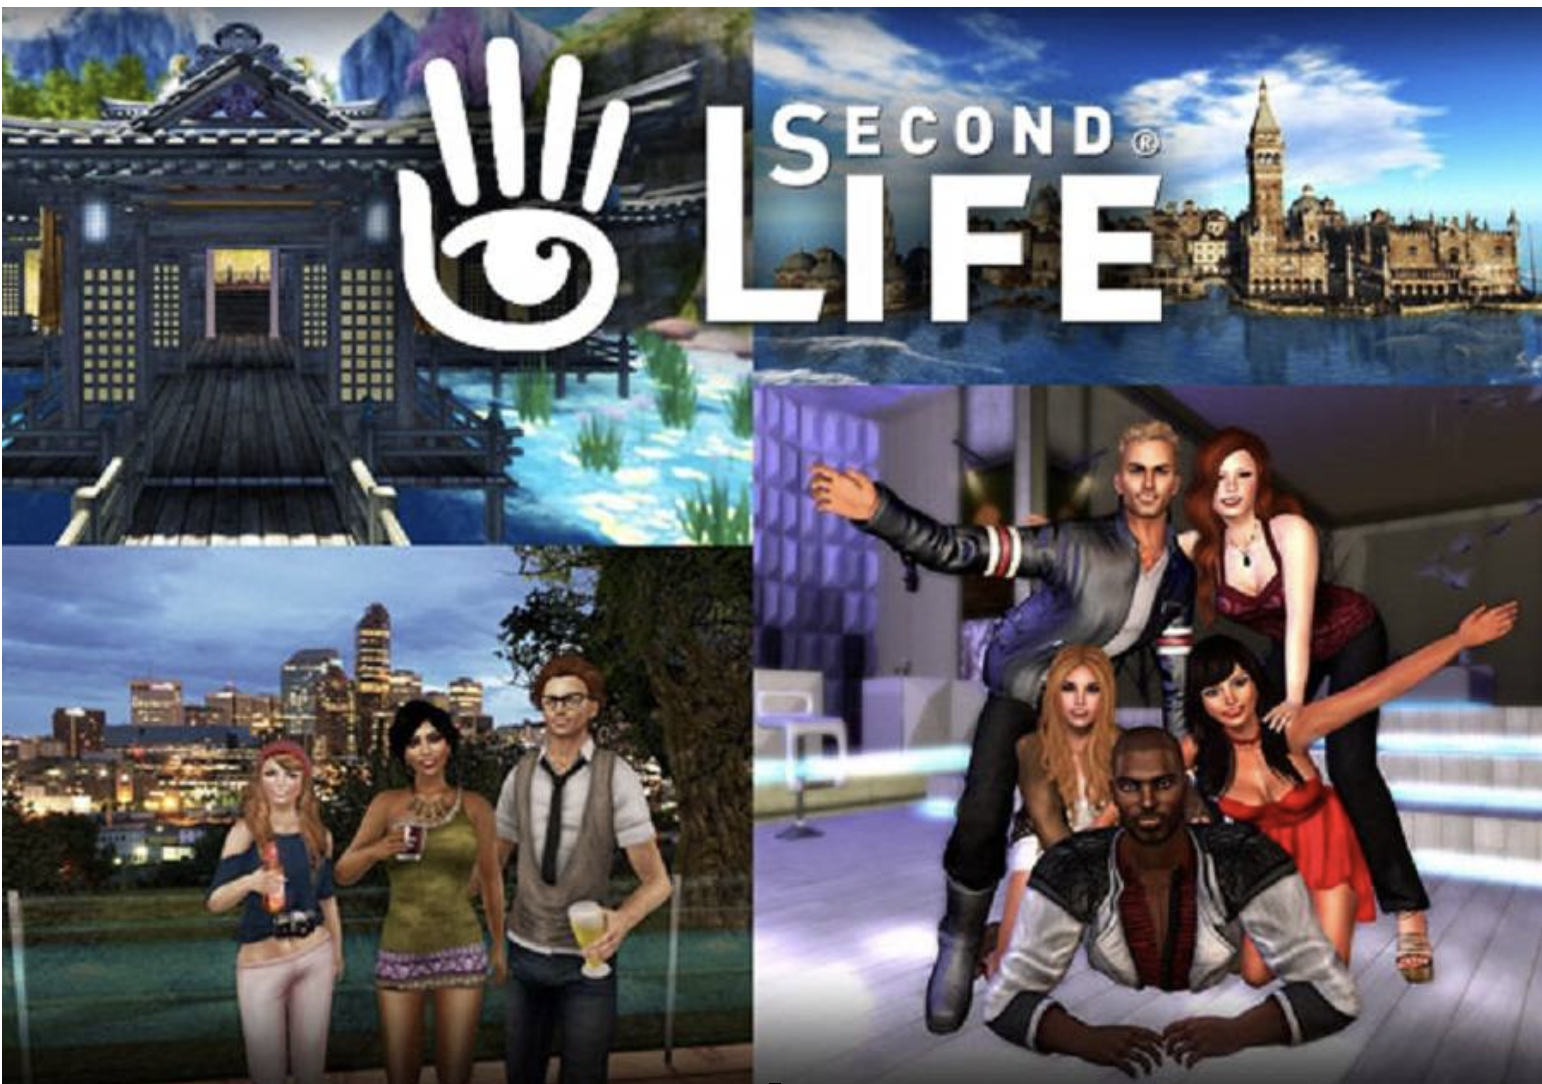 Second de. Second Life игра. Виртуальный мир second Life. Секонд лайф 2 игра. Игра в жизни.